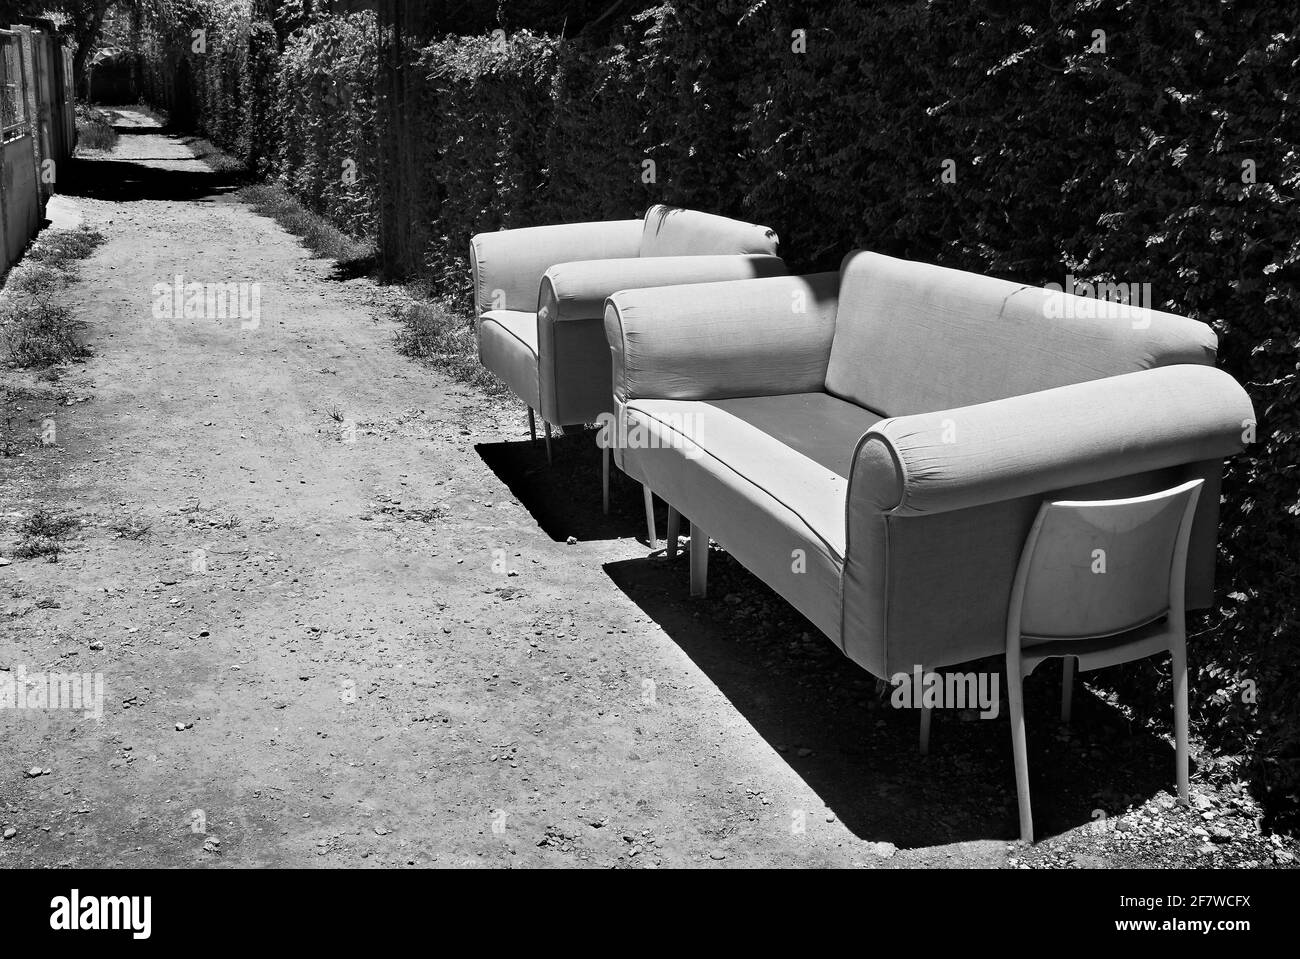 Photo noir et blanc d'un canapé abandonné et d'une chaise debout sur un chemin public à côté d'une haie, aucune personne n'est visible Banque D'Images